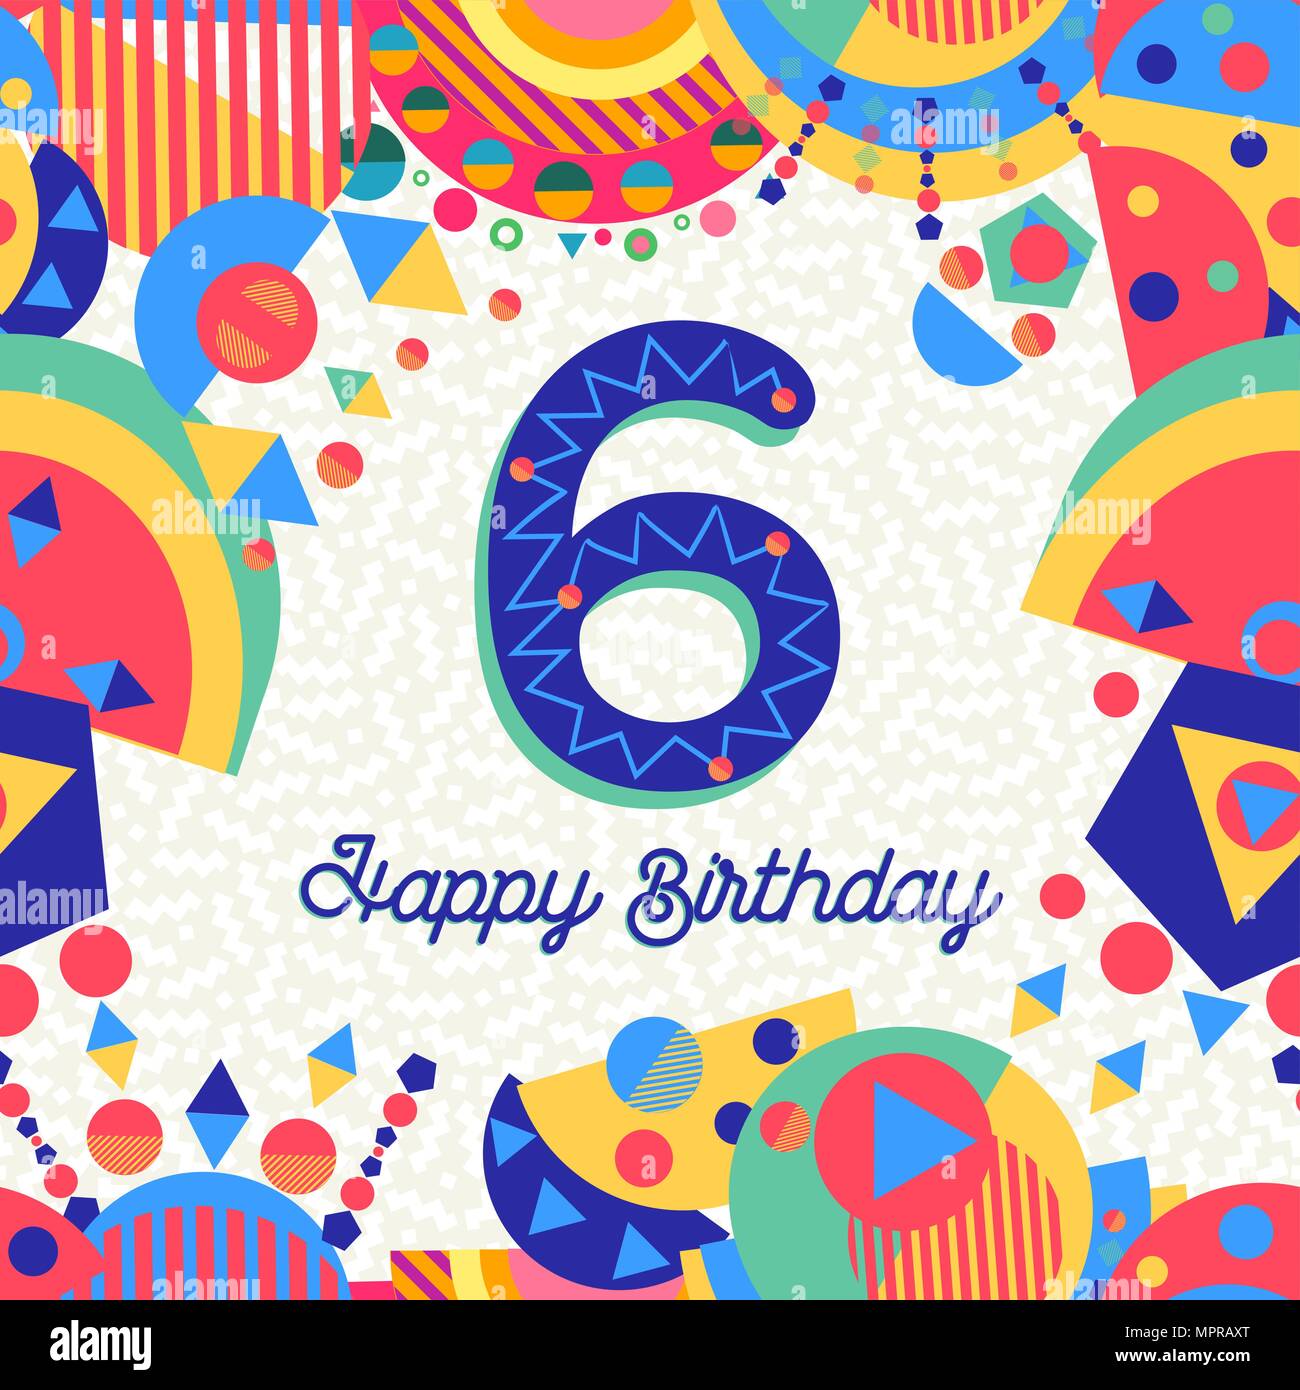 Buon Compleanno Sei 6 Anno Design Divertente Con Il Numero Di Etichetta Di Testo E Decorazione Colorata Ideale Per L Invito Alla Festa O Biglietto Di Auguri Eps10 Vettore Immagine E Vettoriale